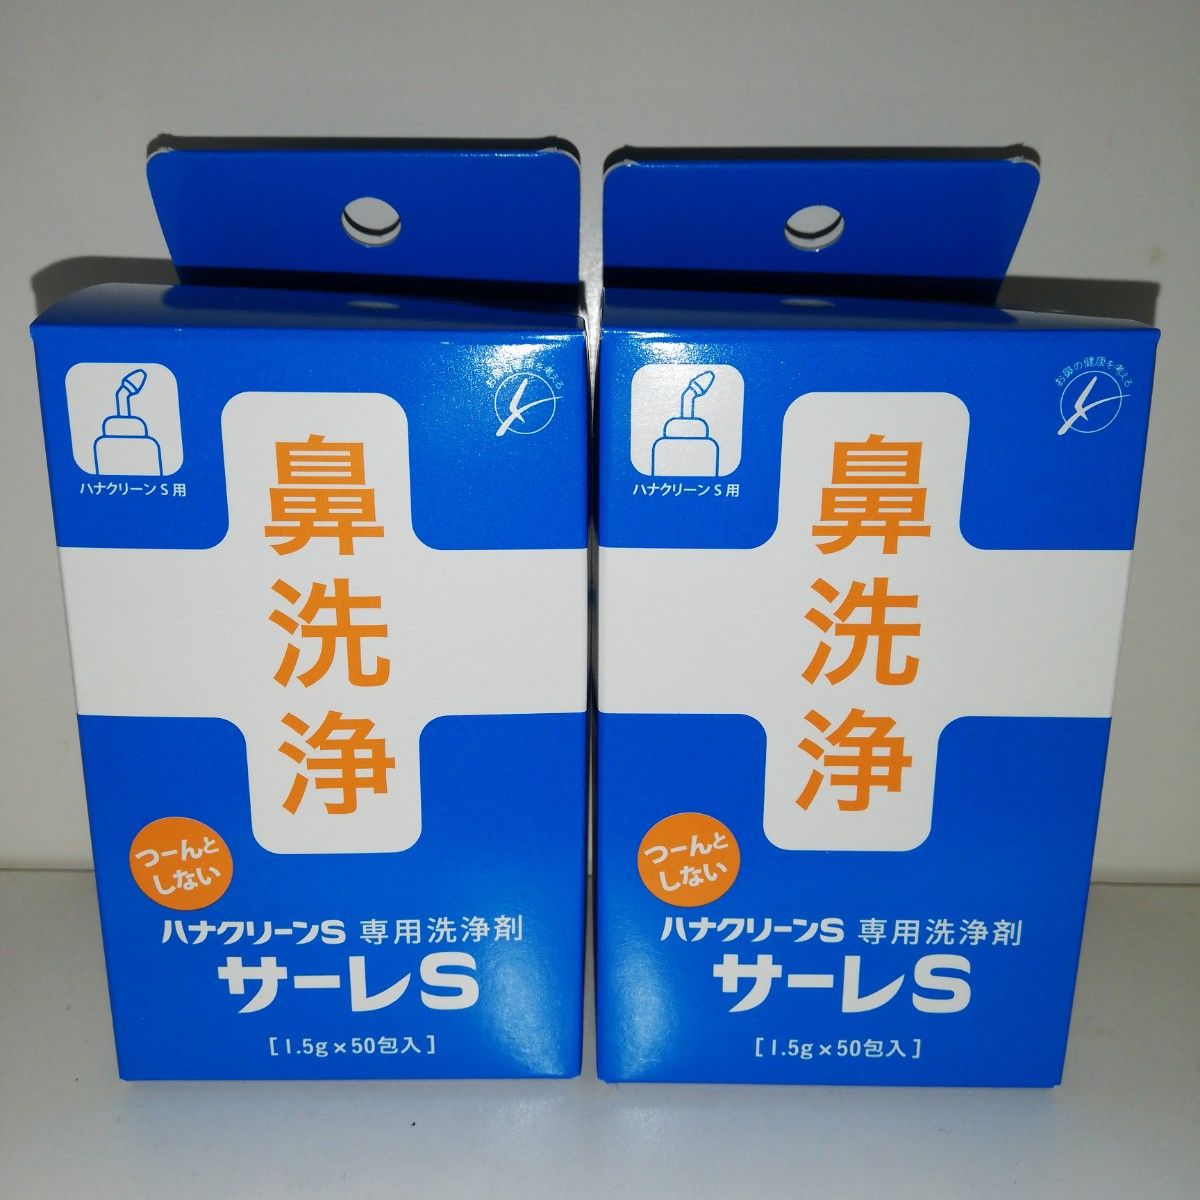 ハナクリーンS(ハンディタイプ鼻洗浄器) (洗浄剤「サーレS」50包セット